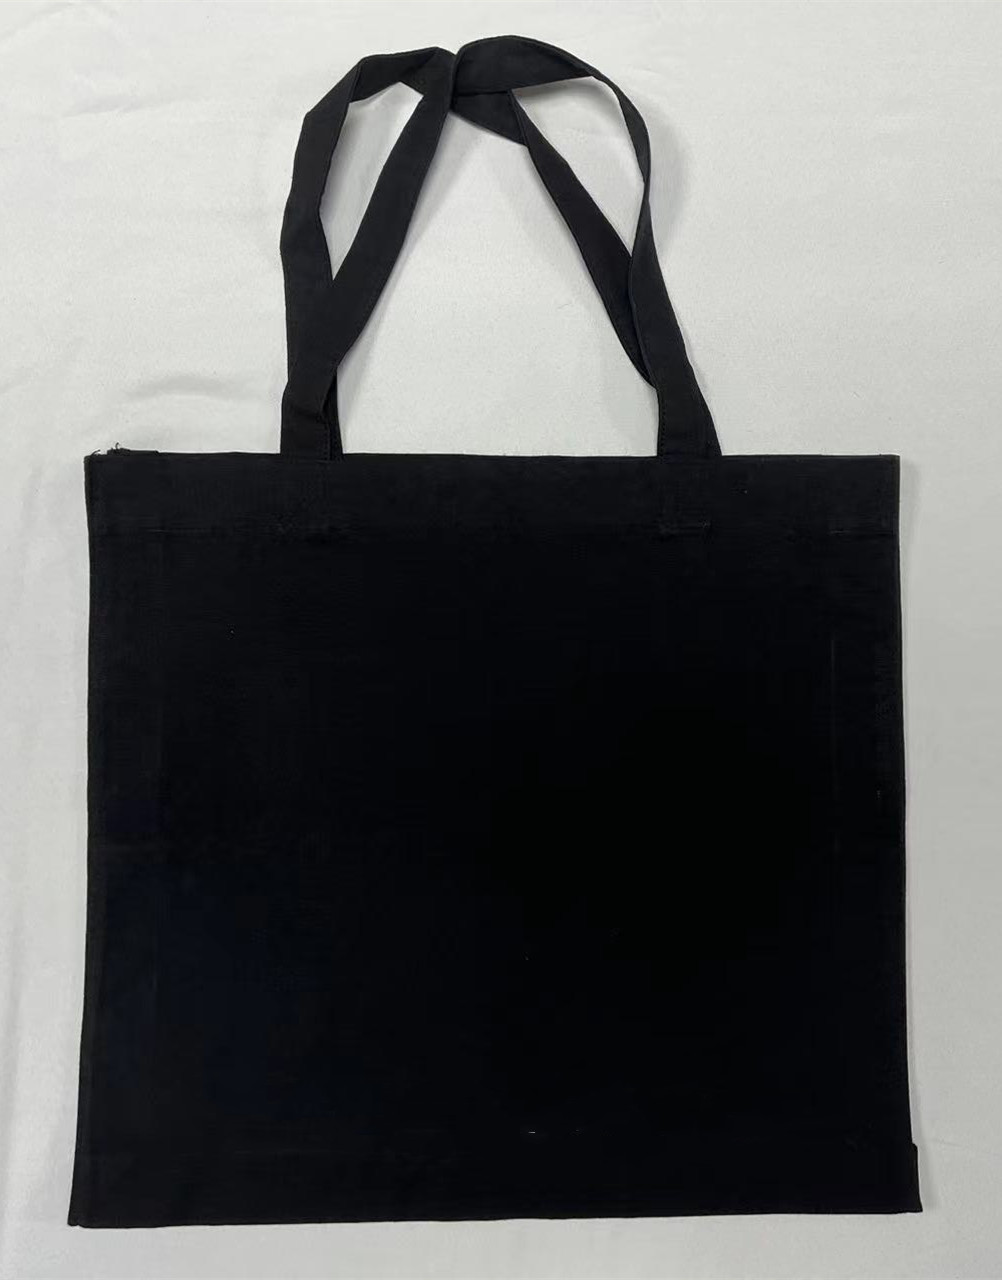 Shopper Bags bags 